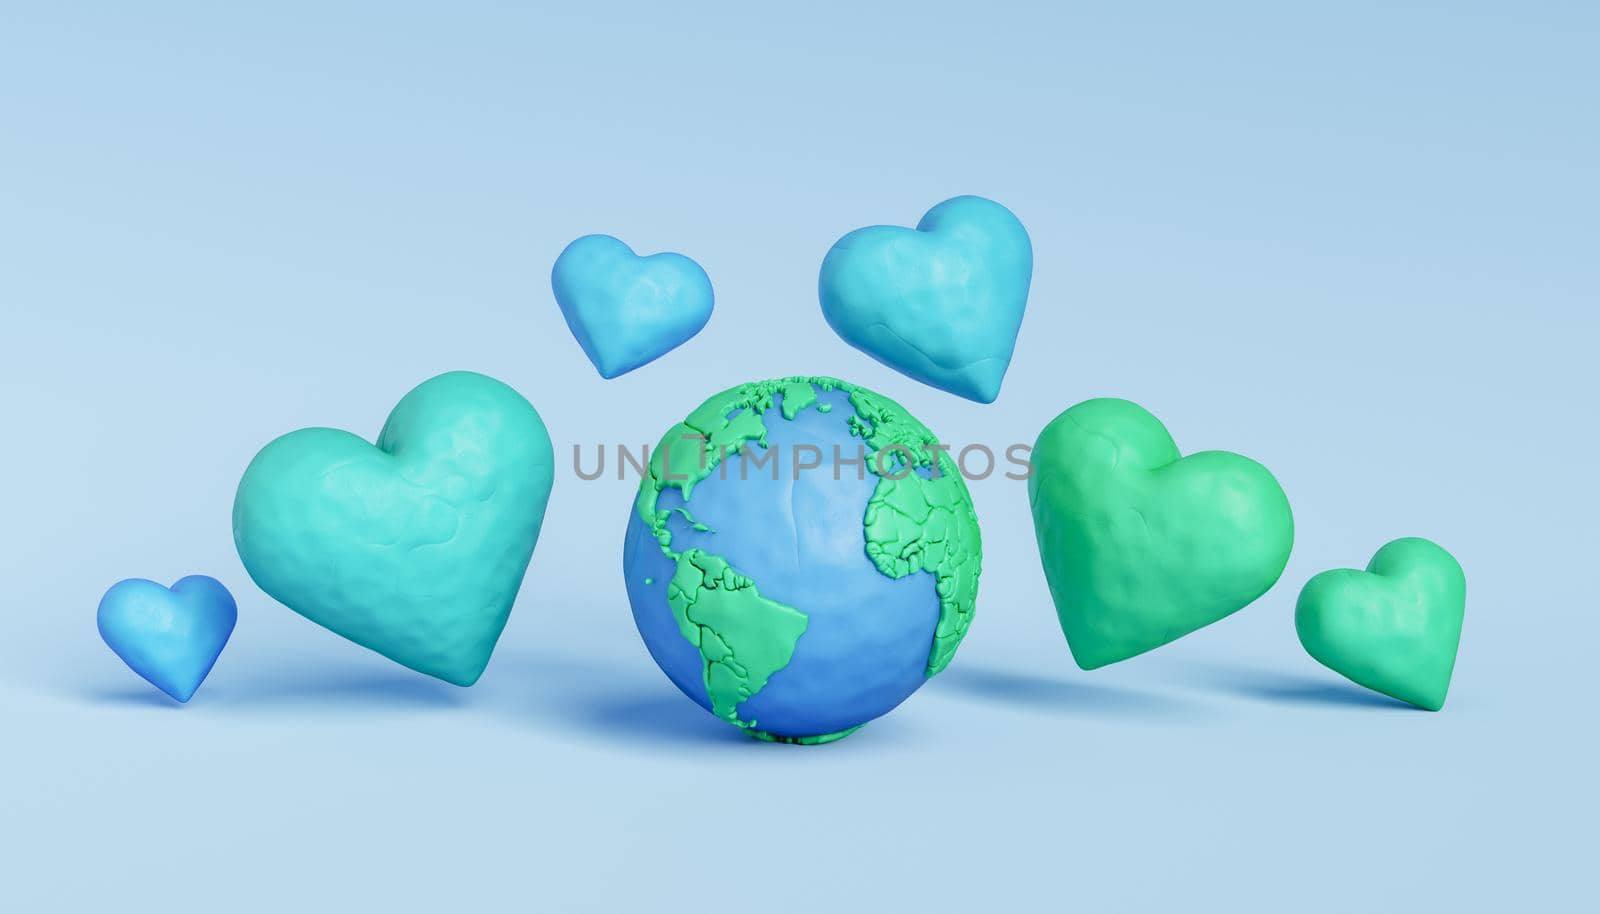 Bright hearts around Earth globe by asolano